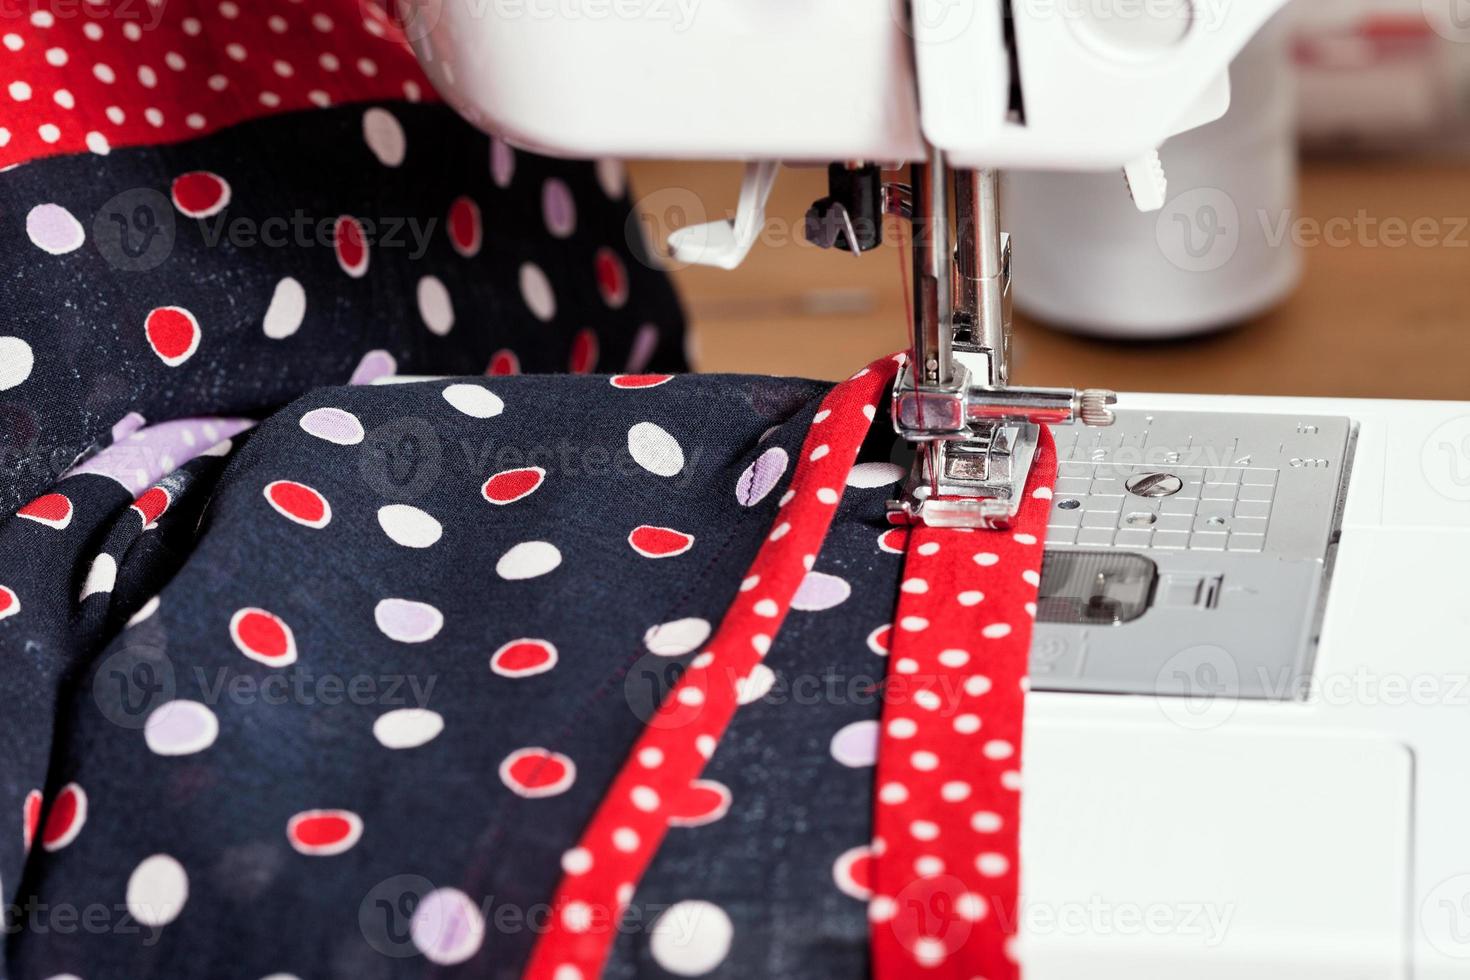 sewing dress on machine photo